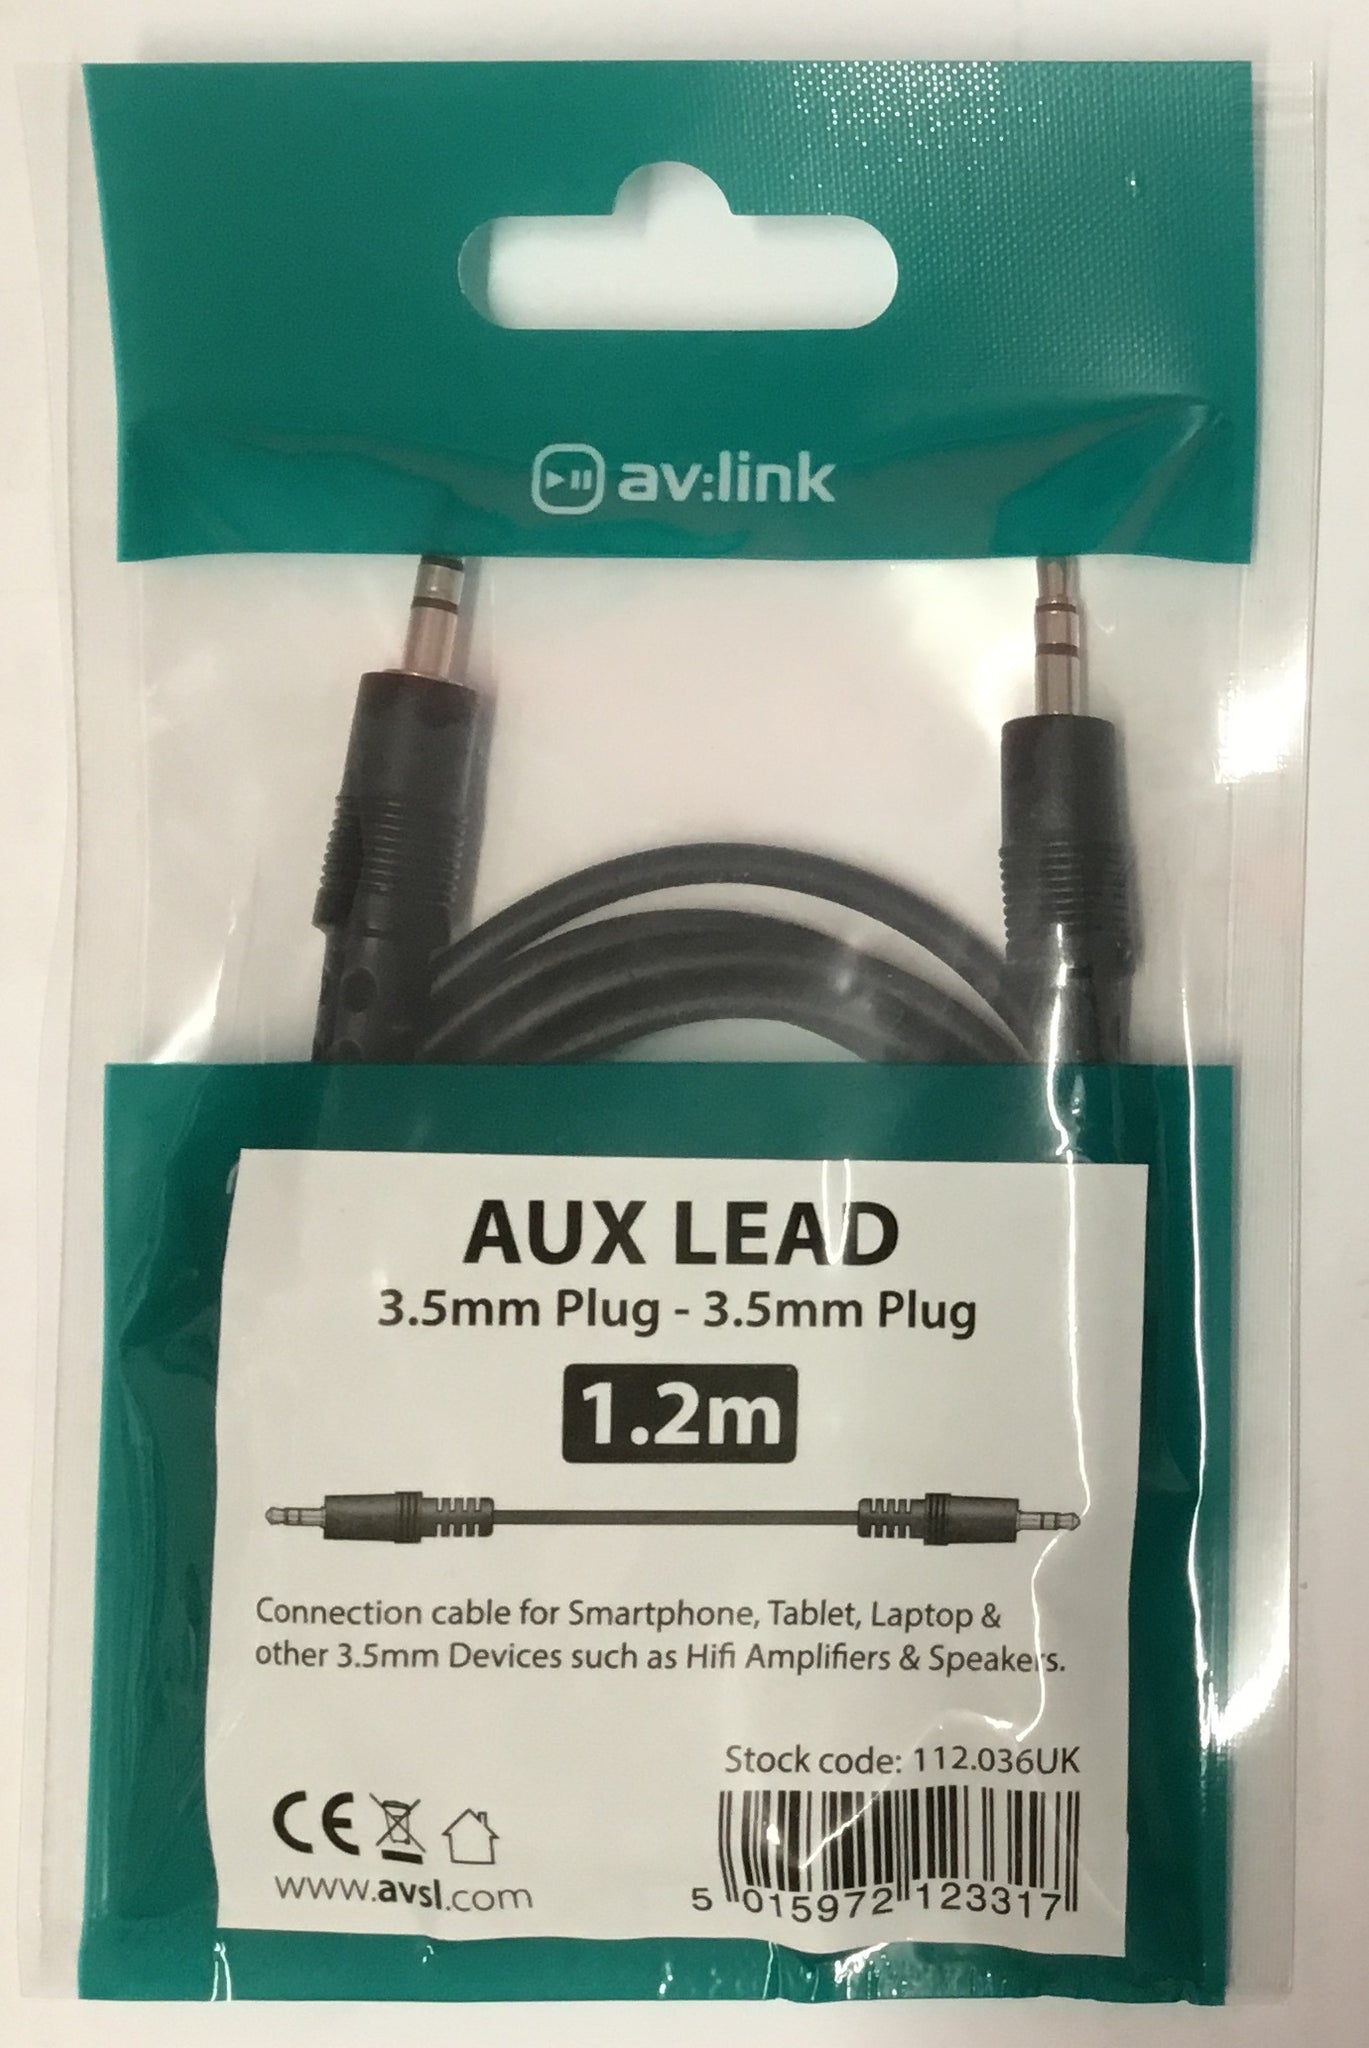 av:link Aux Lead 3.5mm plug - 3.5mm plug